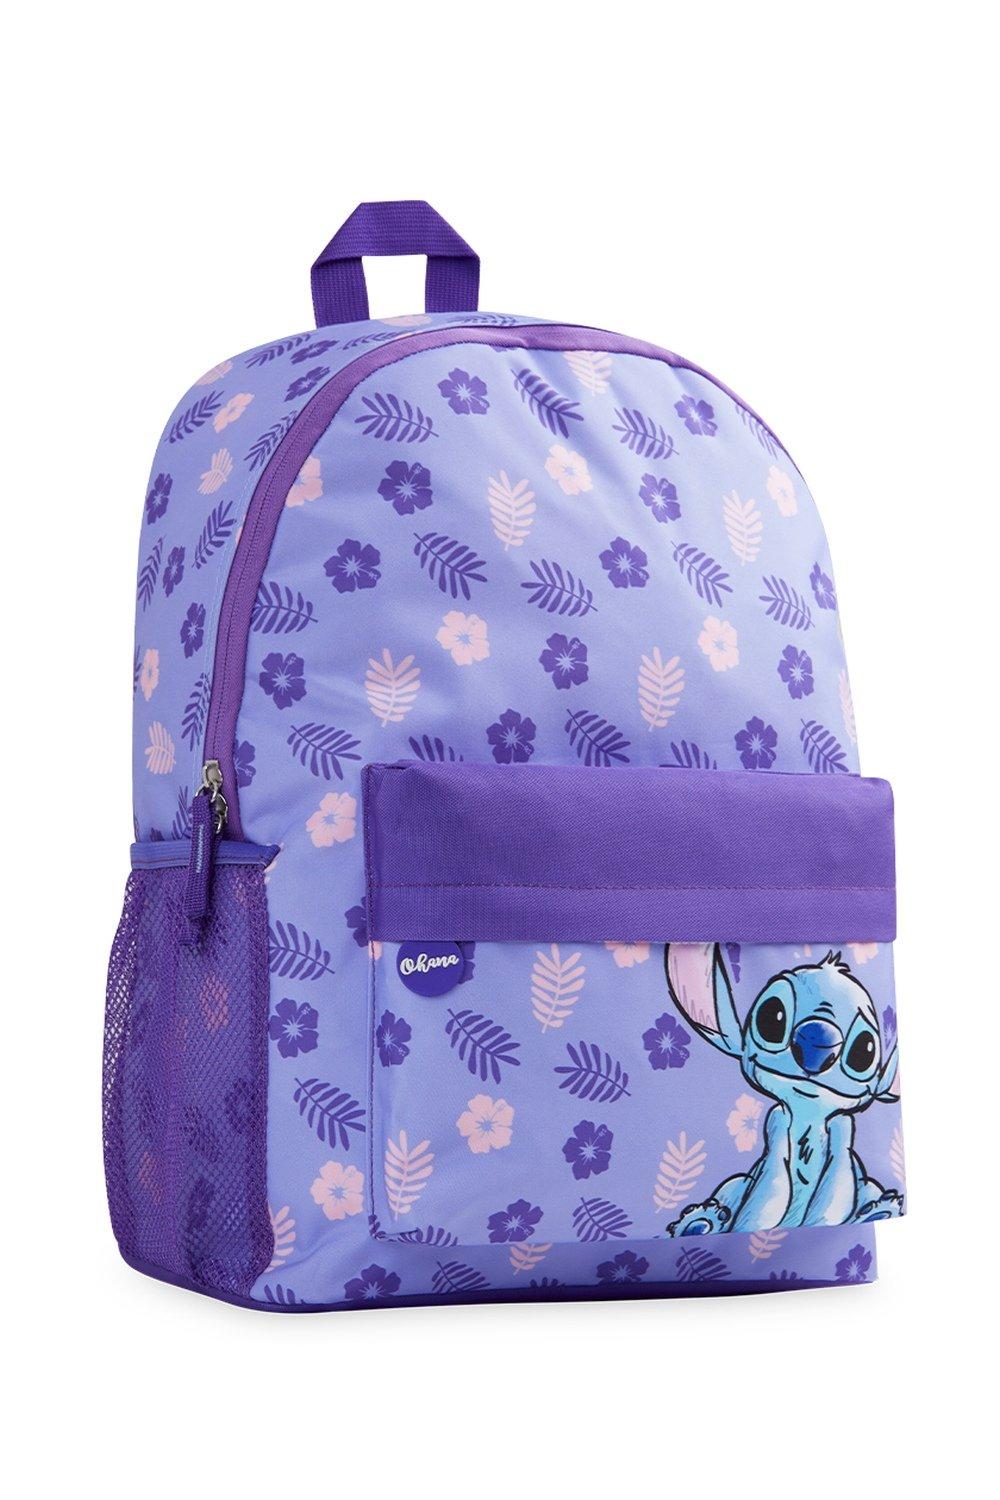 Школьная сумка Лило и Стич Disney, фиолетовый genuine disney lilo